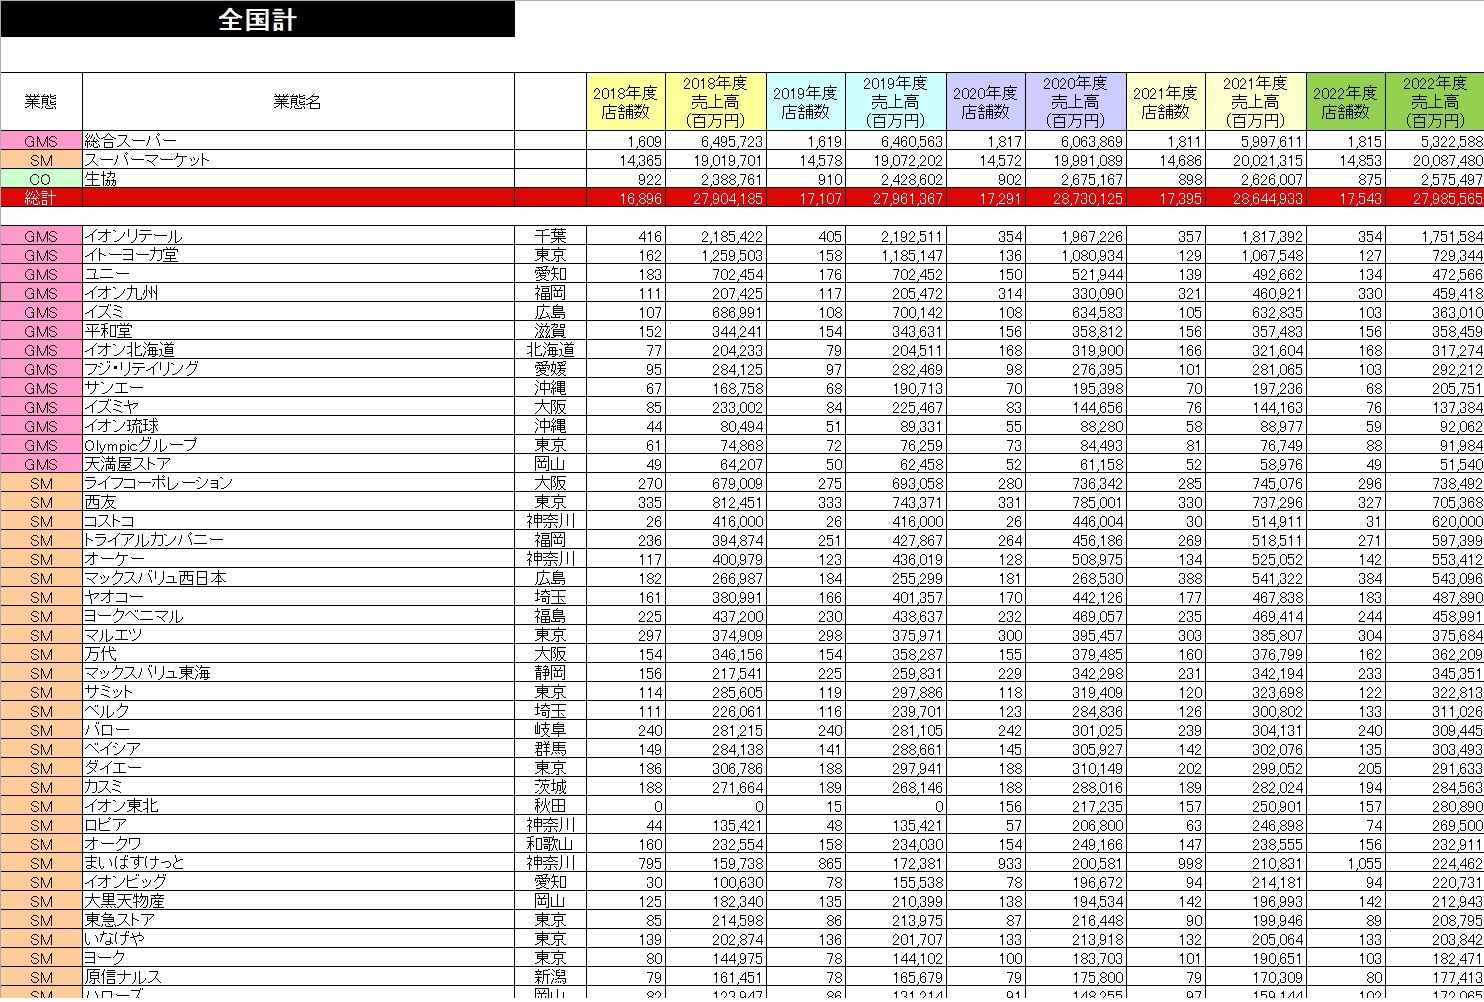 小売業都道府県別勢力図2024【Excel版】GMS・SM基本版+DgS+CVS+HC+DS